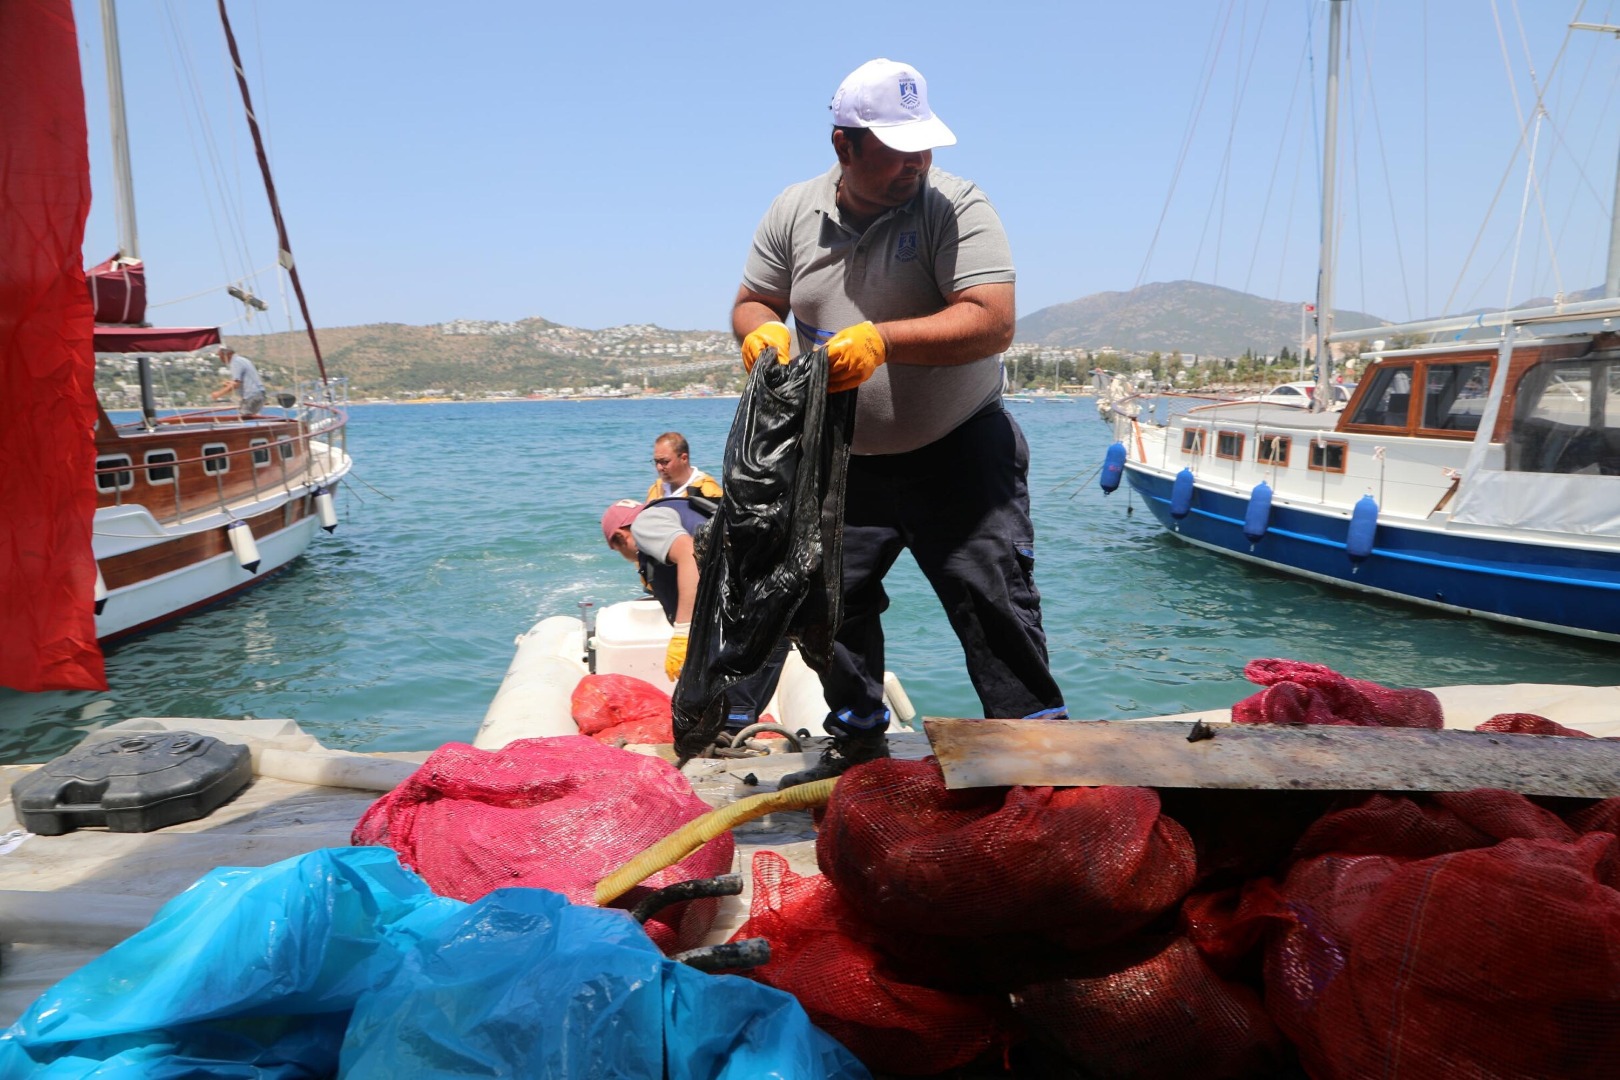 Sahilden geçenler gözlerini alamadı: Denizin dibine daldılar 342 kilo çıkardılar 6